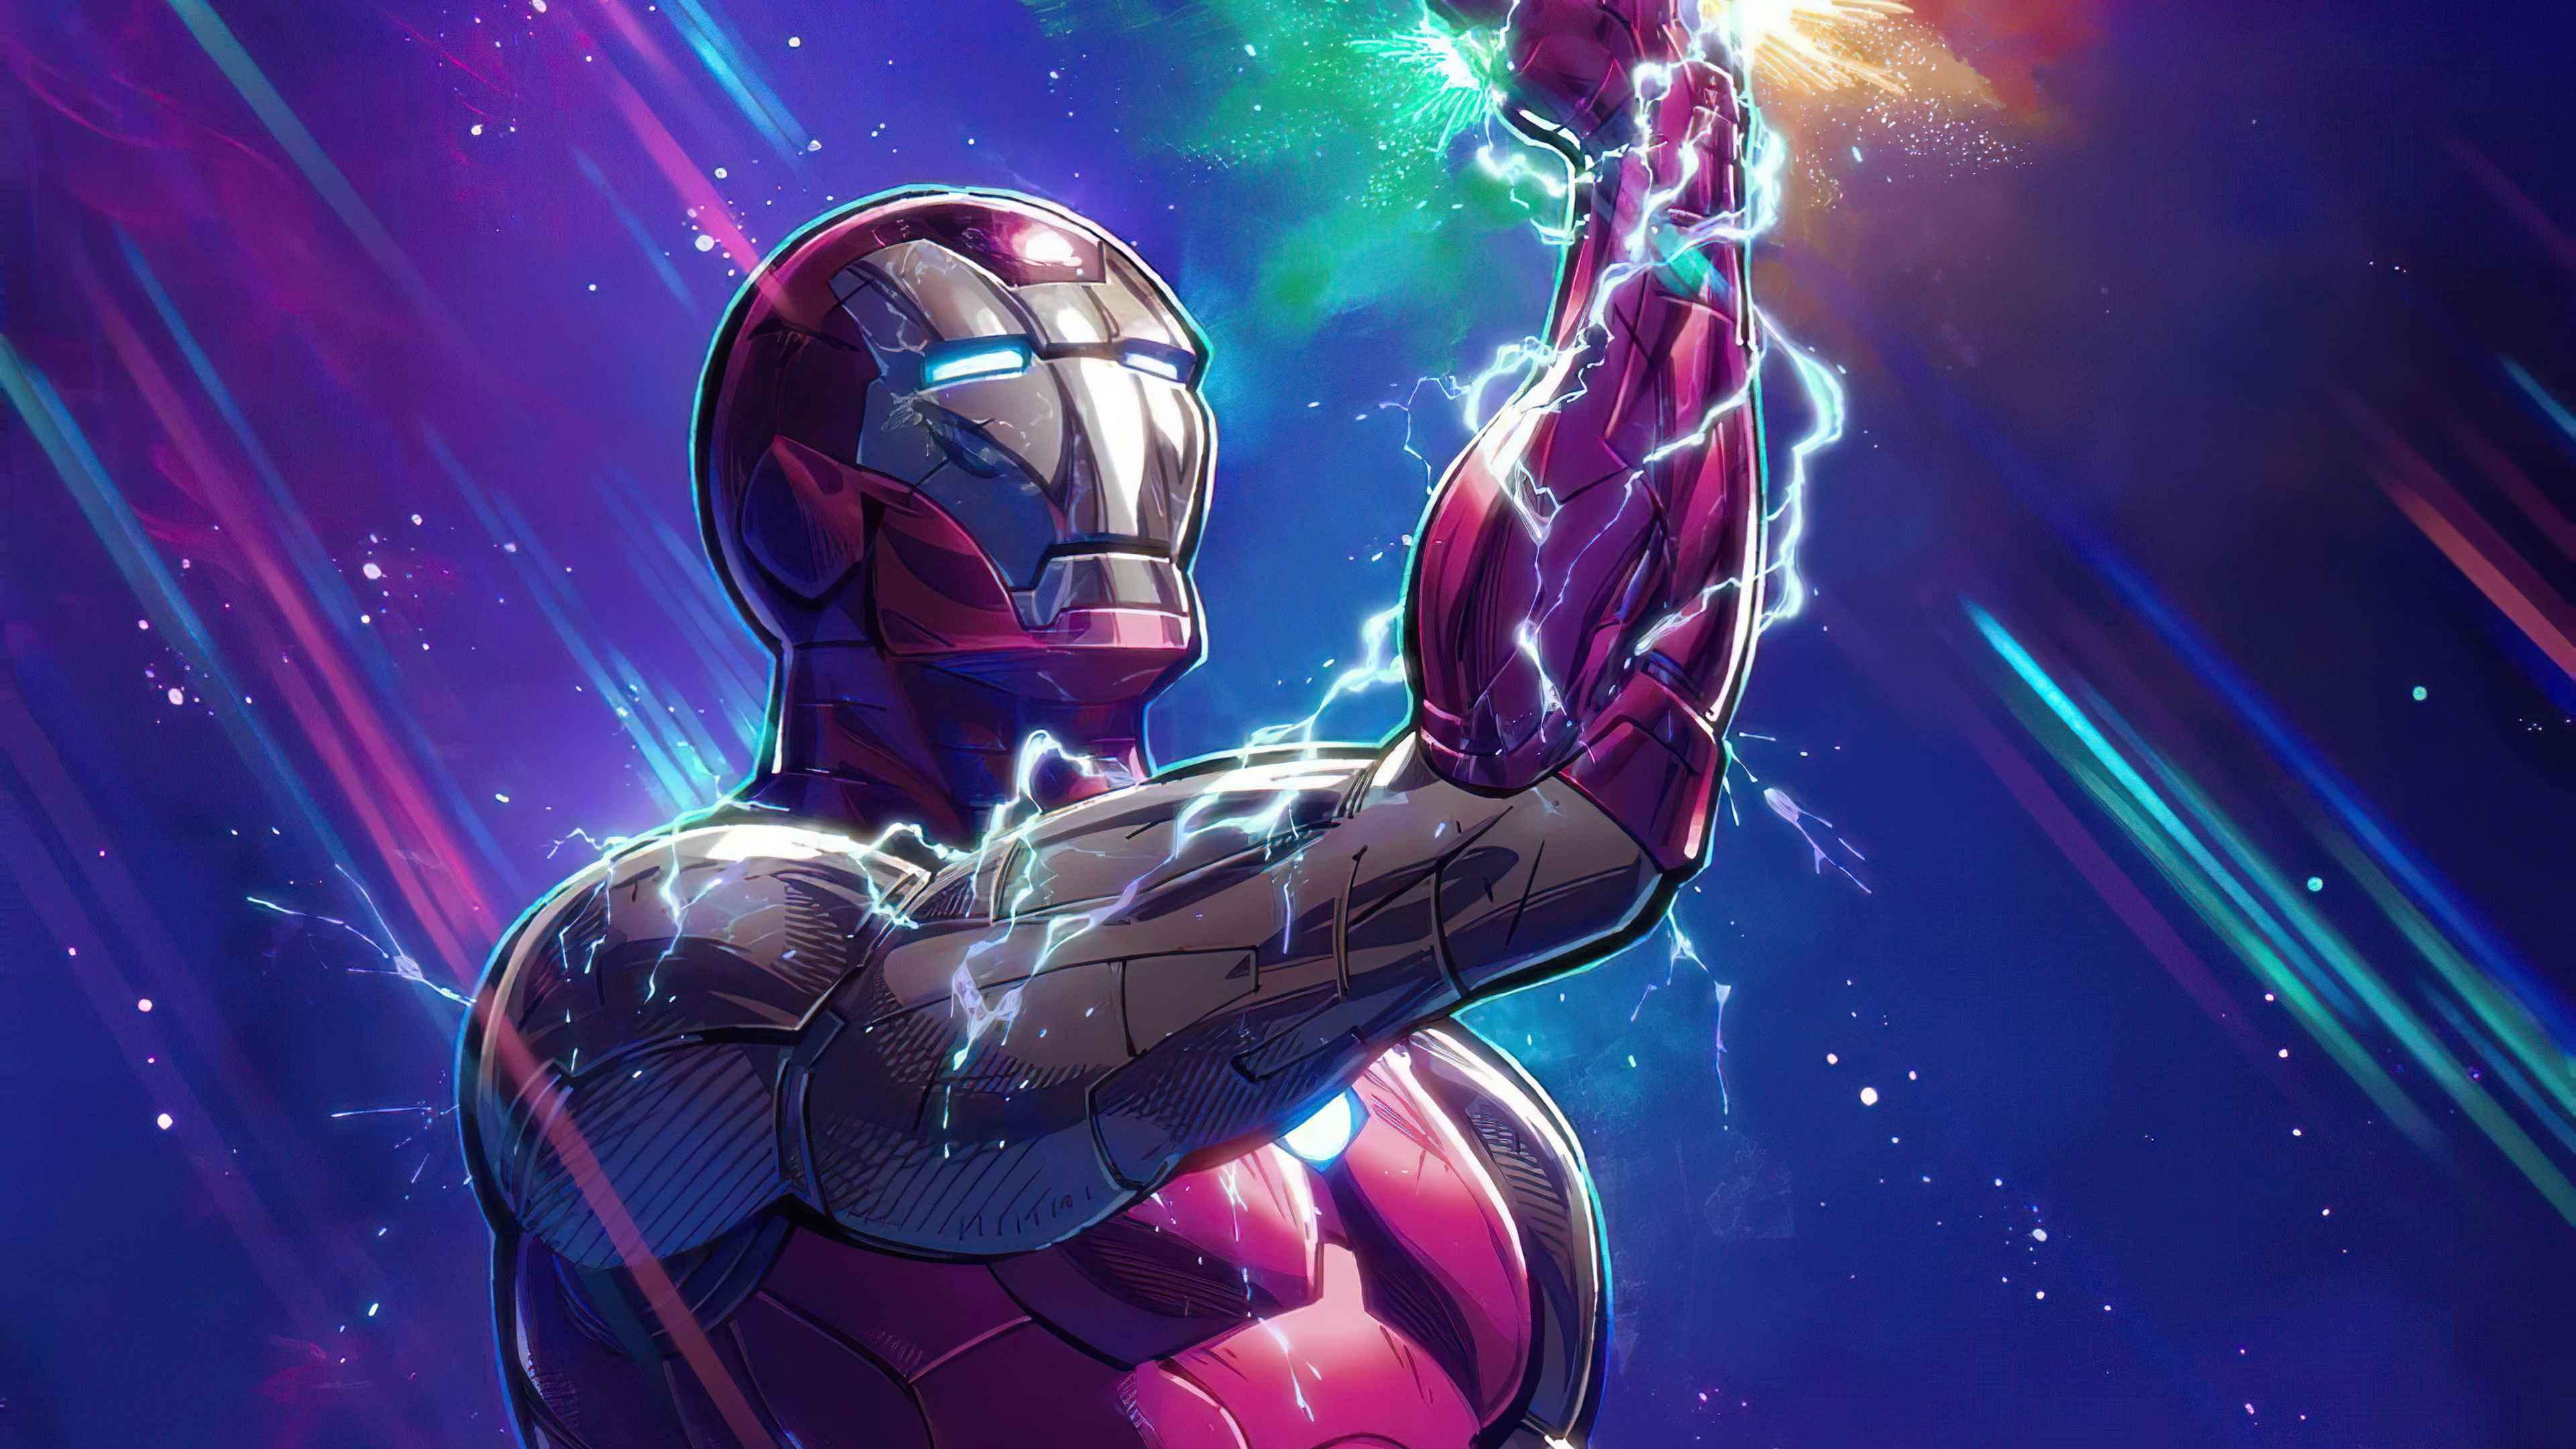 2020 Iron Man Infinity Gauntlet - 4k Wallpapers - 40.000+ ipad ...